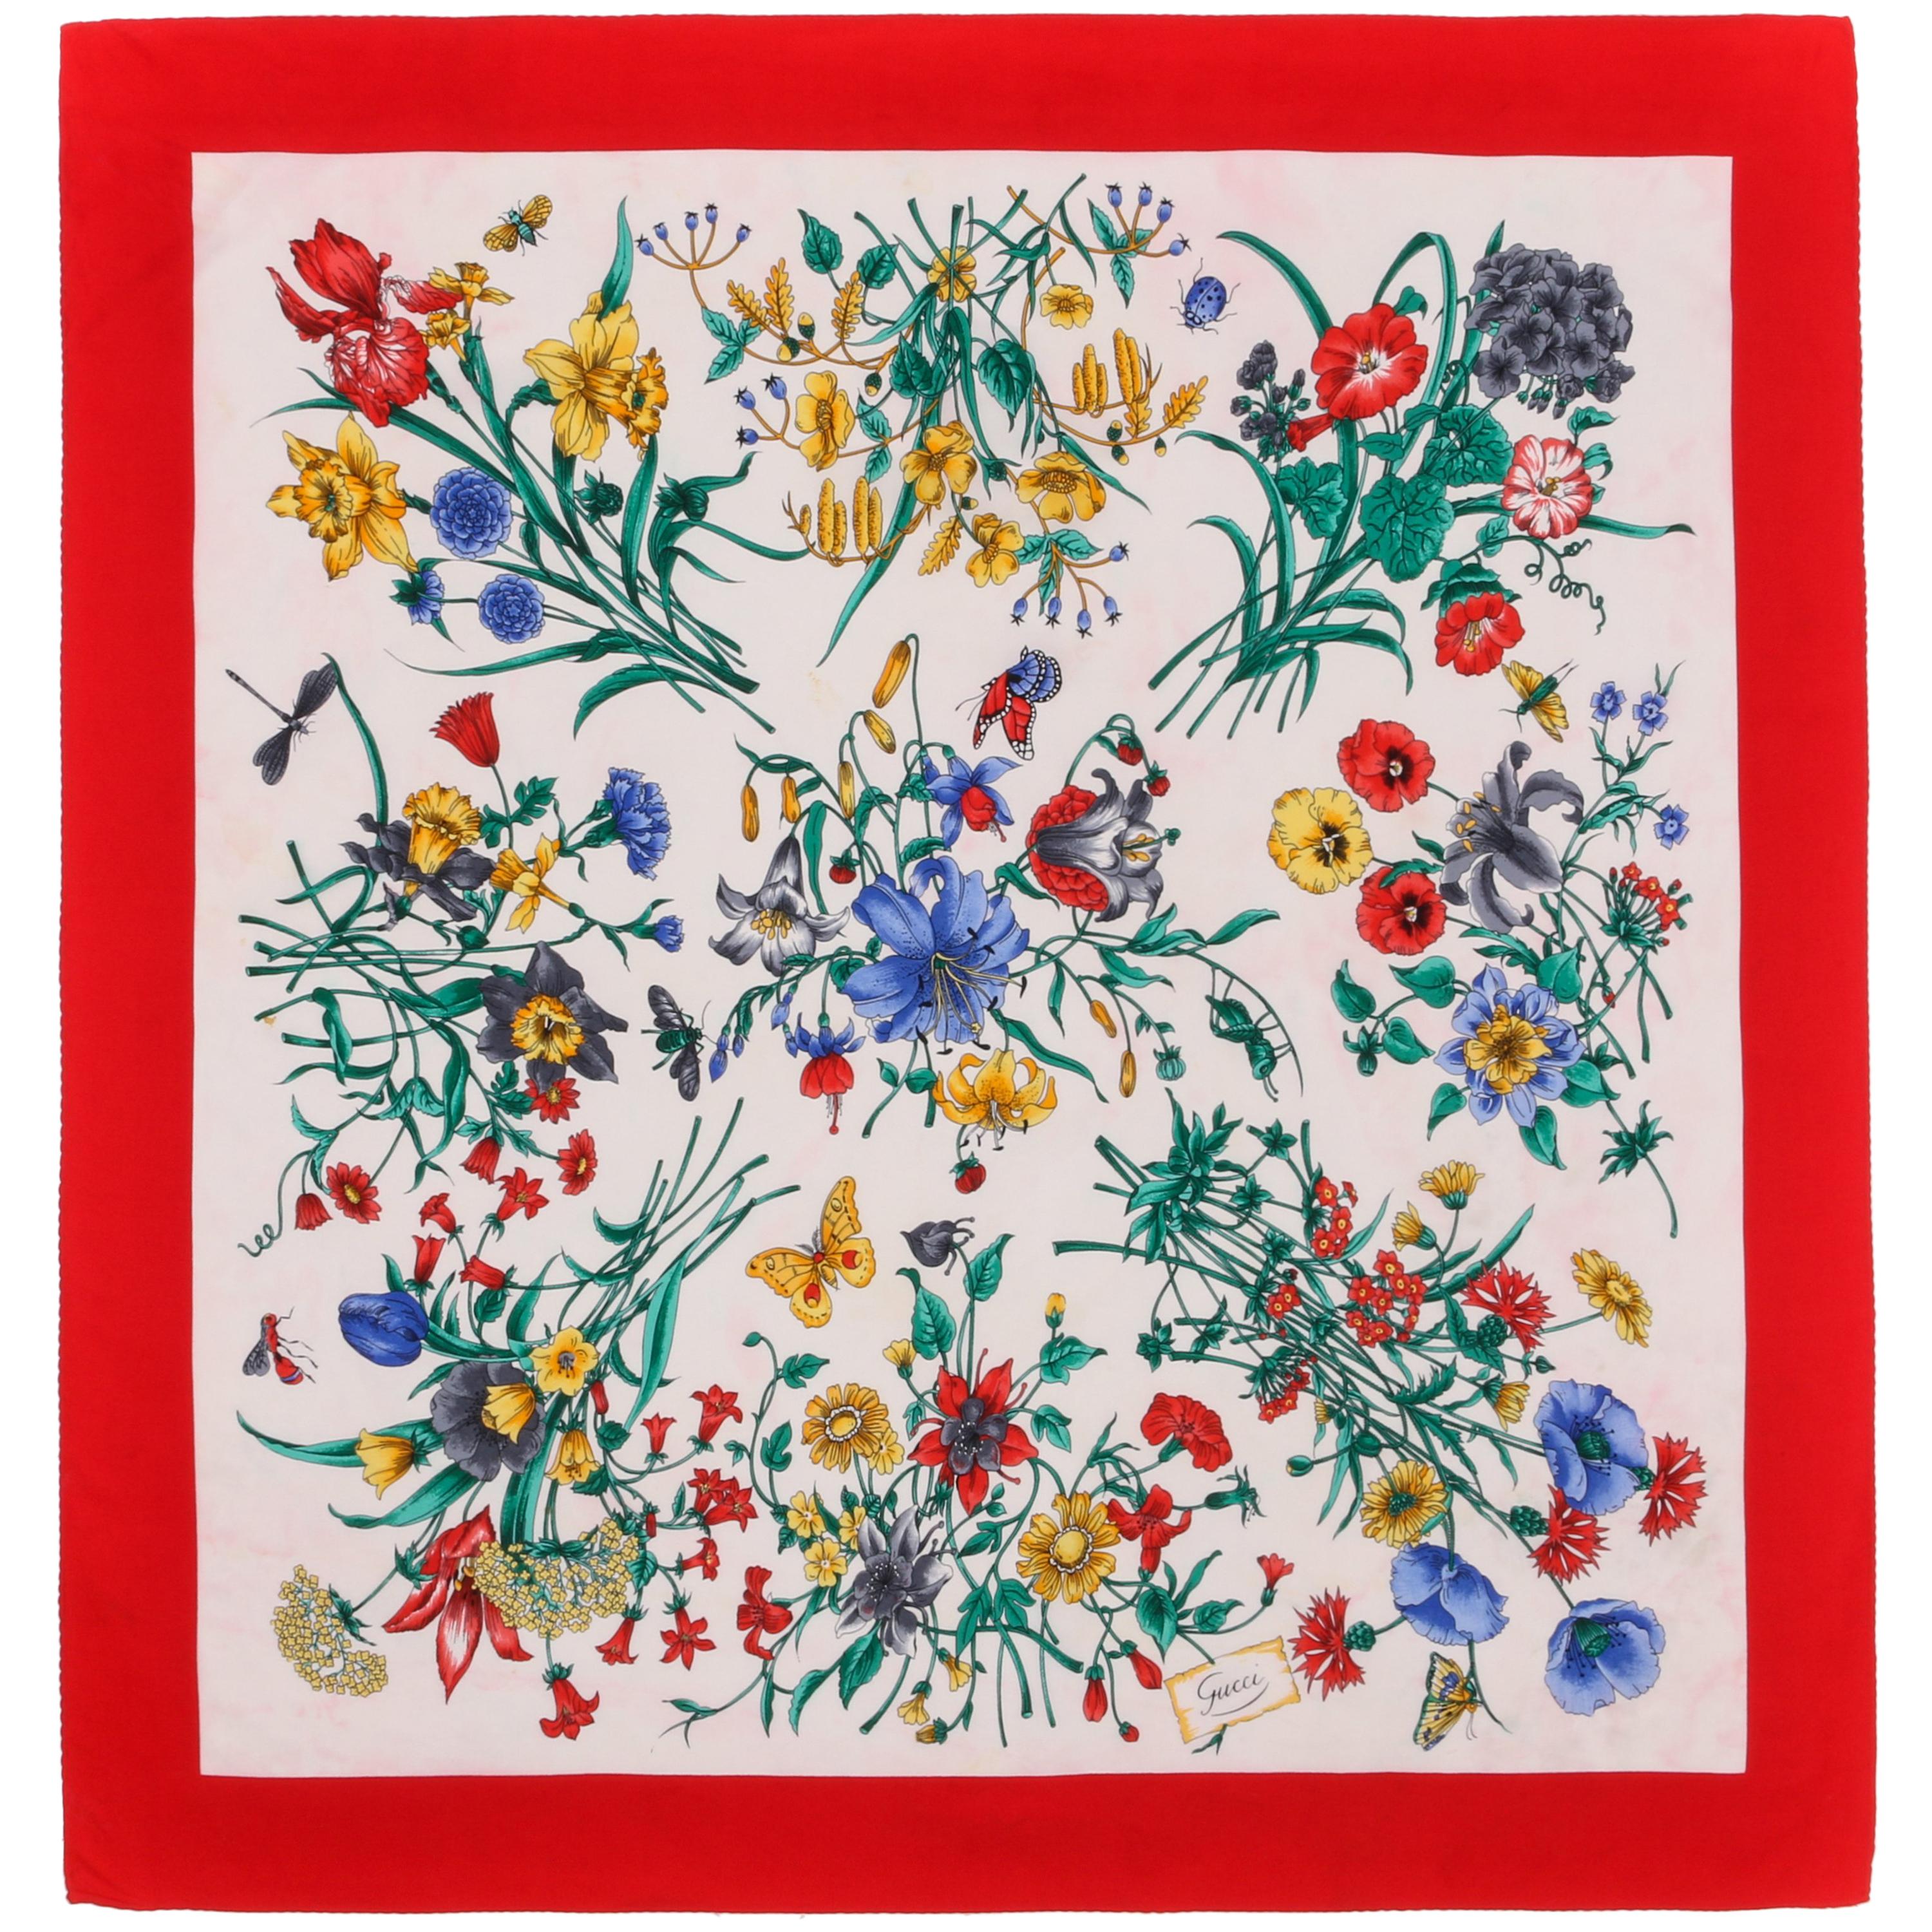 GUCCI c.1970s Vittorio Accornero Red Iconic "Flora" Print Silk Scarf